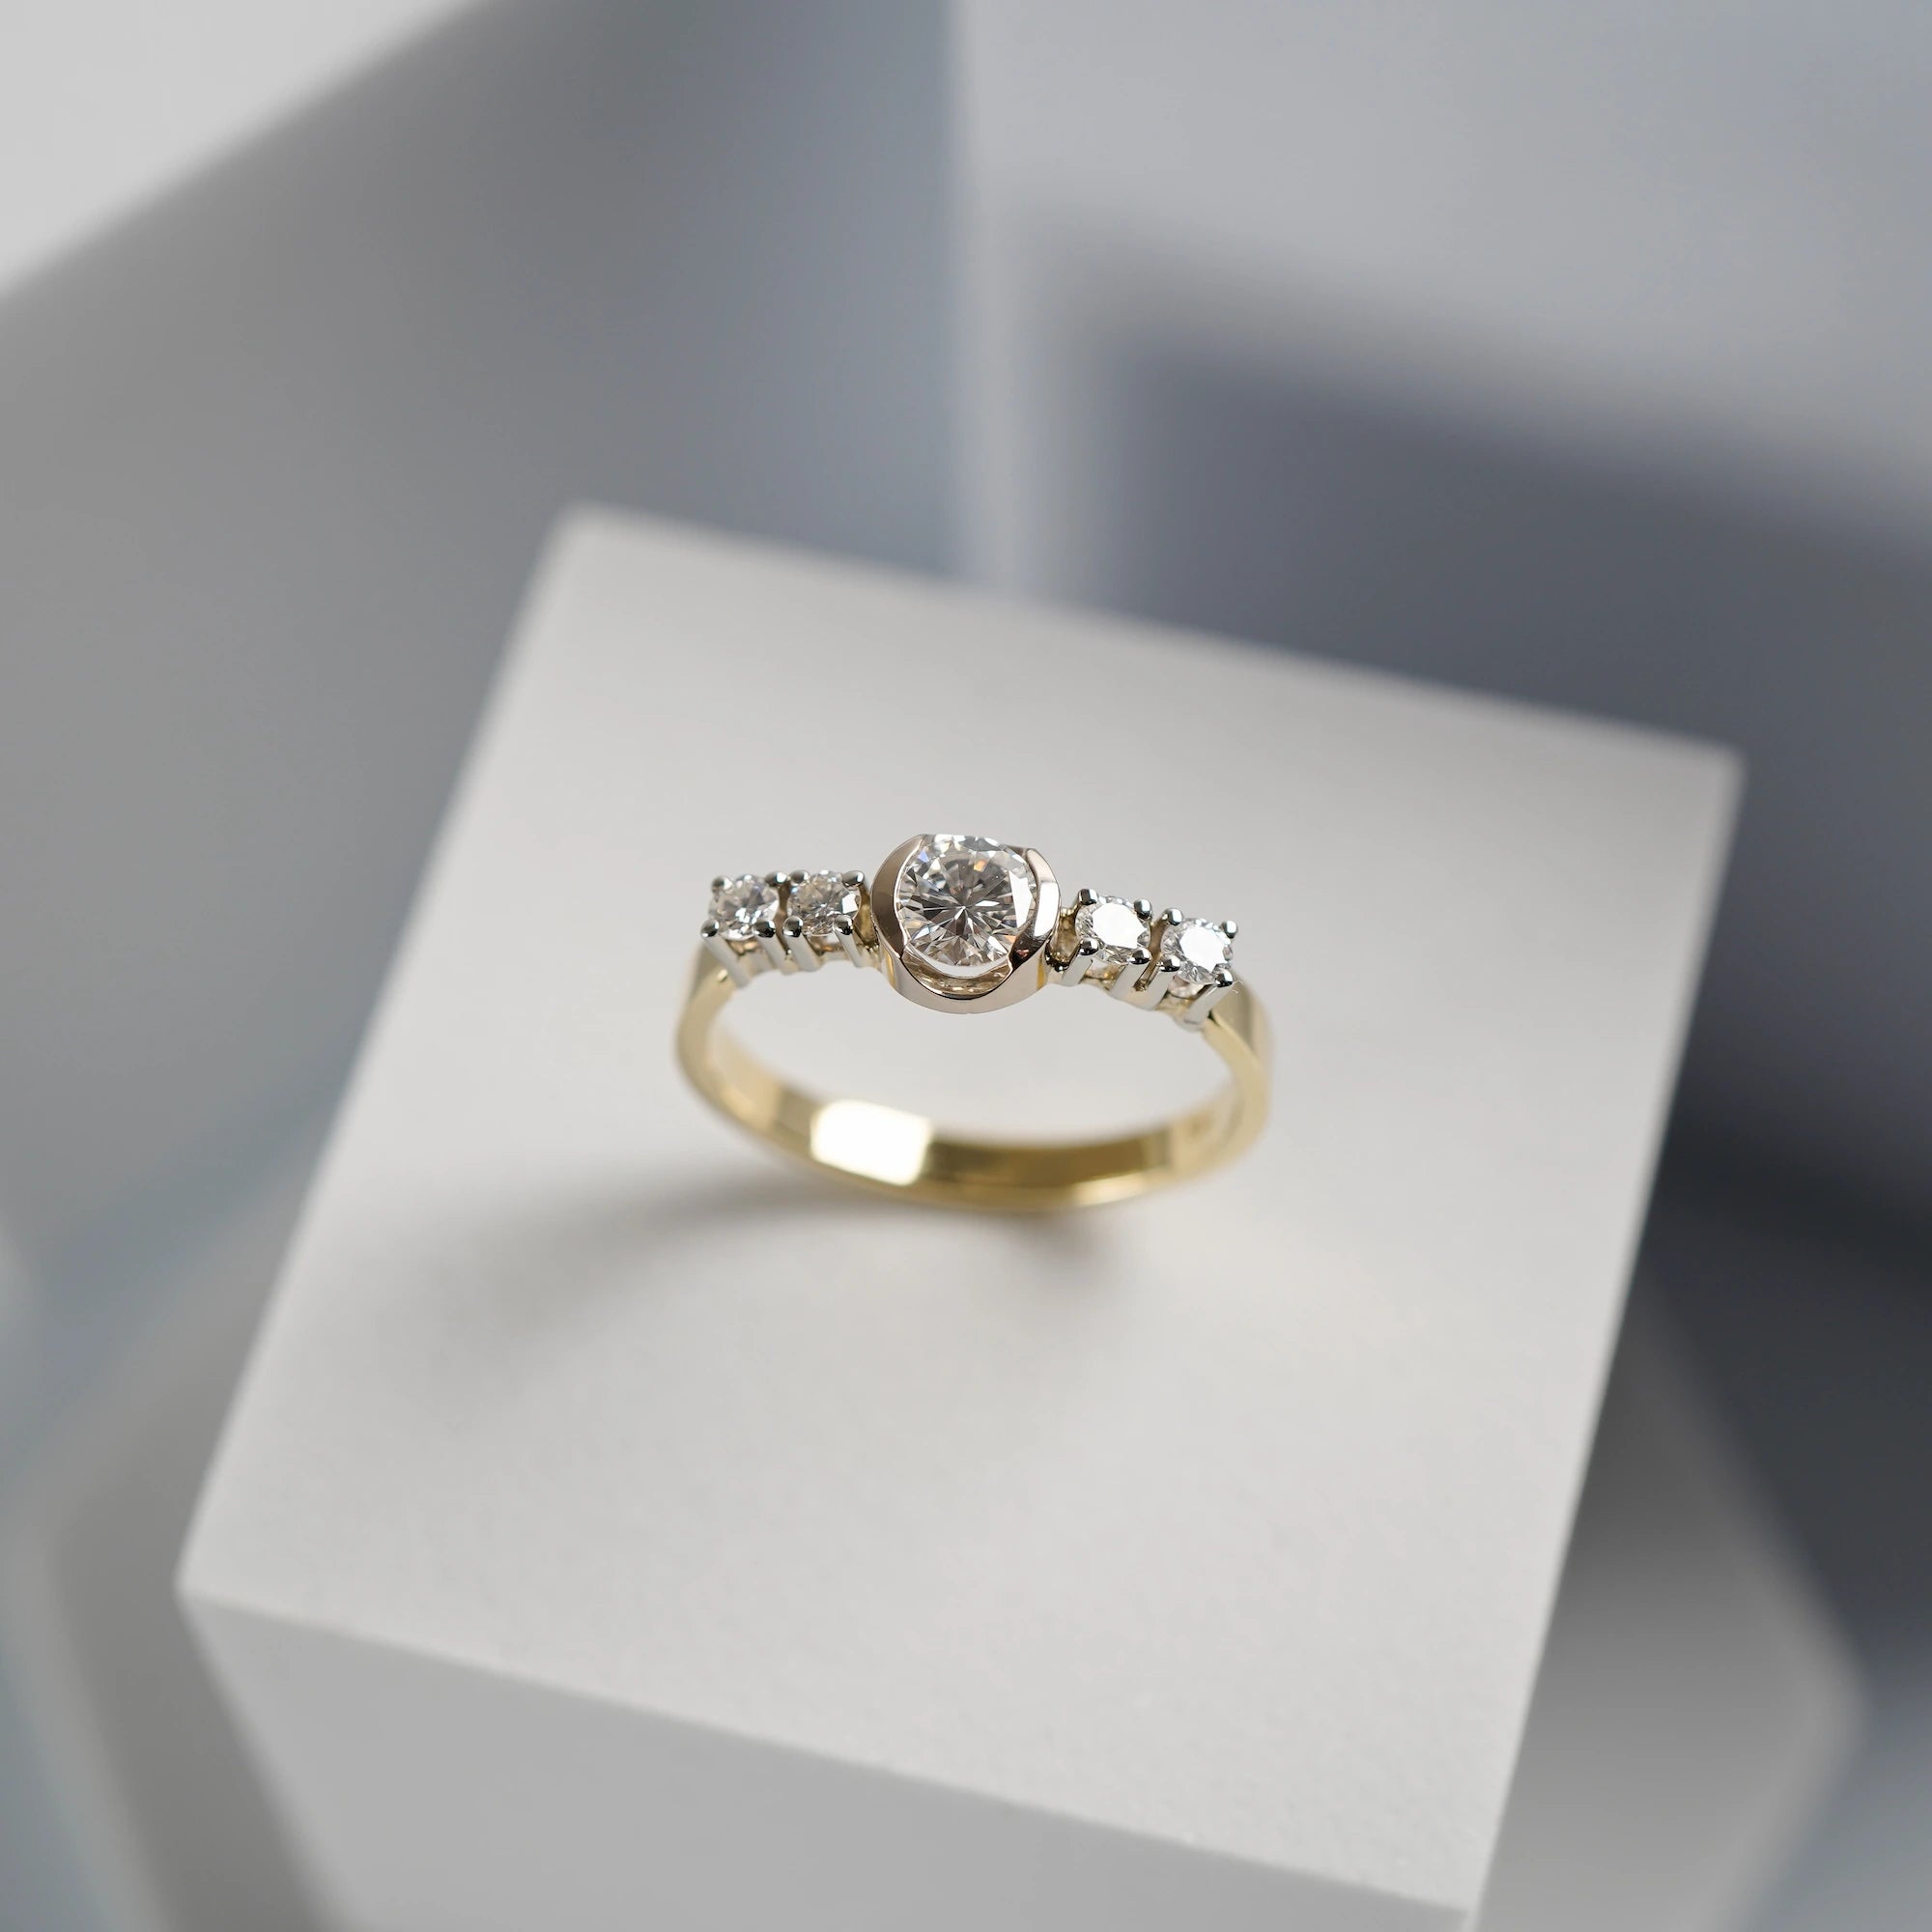 Produktfotografie des gelbgoldenen Ring mit 5 gefassten Diamanten auf der Ringschiene, wovon der zentrale Stein der Größte ist